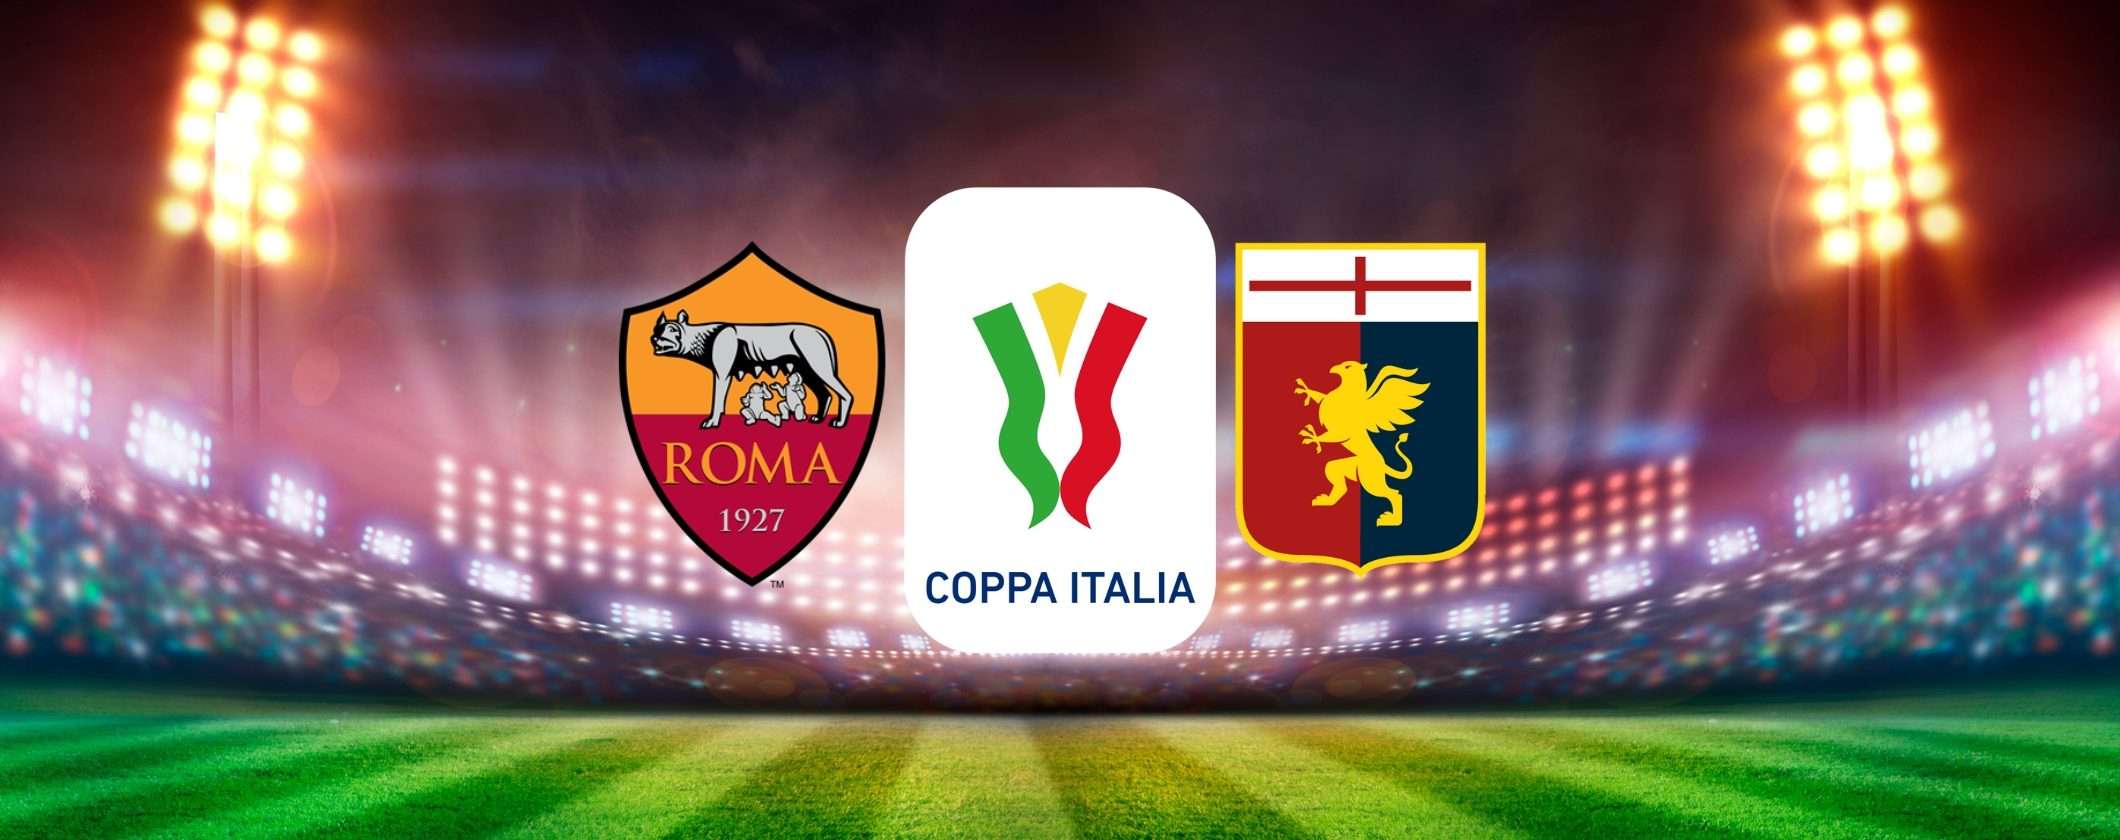 Guarda Roma-Genoa in streaming dall'estero (Coppa Italia)